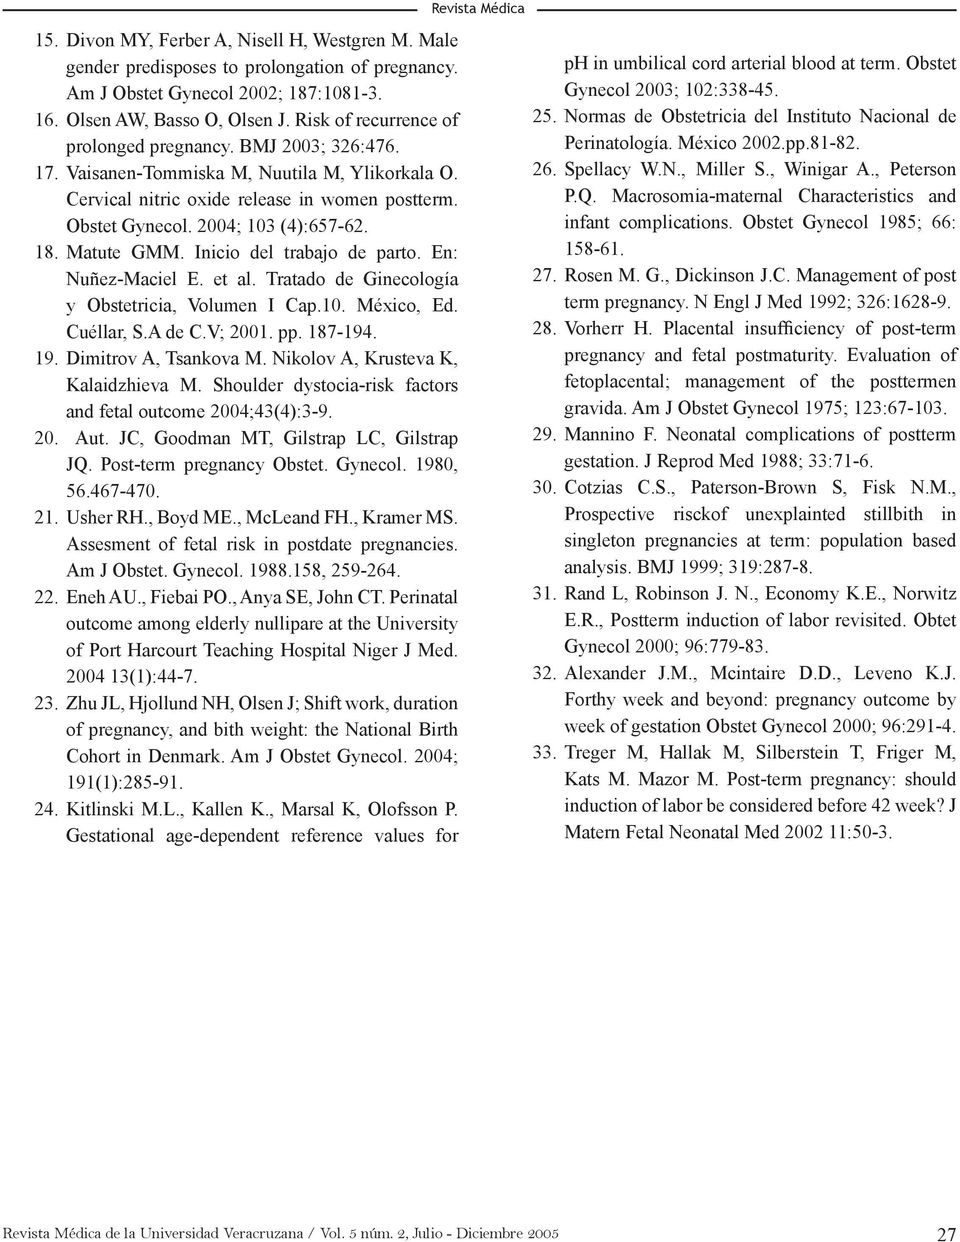 18. Matute GMM. Inicio del trabajo de parto. En: Nuñez-Maciel E. et al. Tratado de Ginecología y Obstetricia, Volumen I Cap.10. México, Ed. Cuéllar, S.A de C.V; 2001. pp. 187-194. 19.